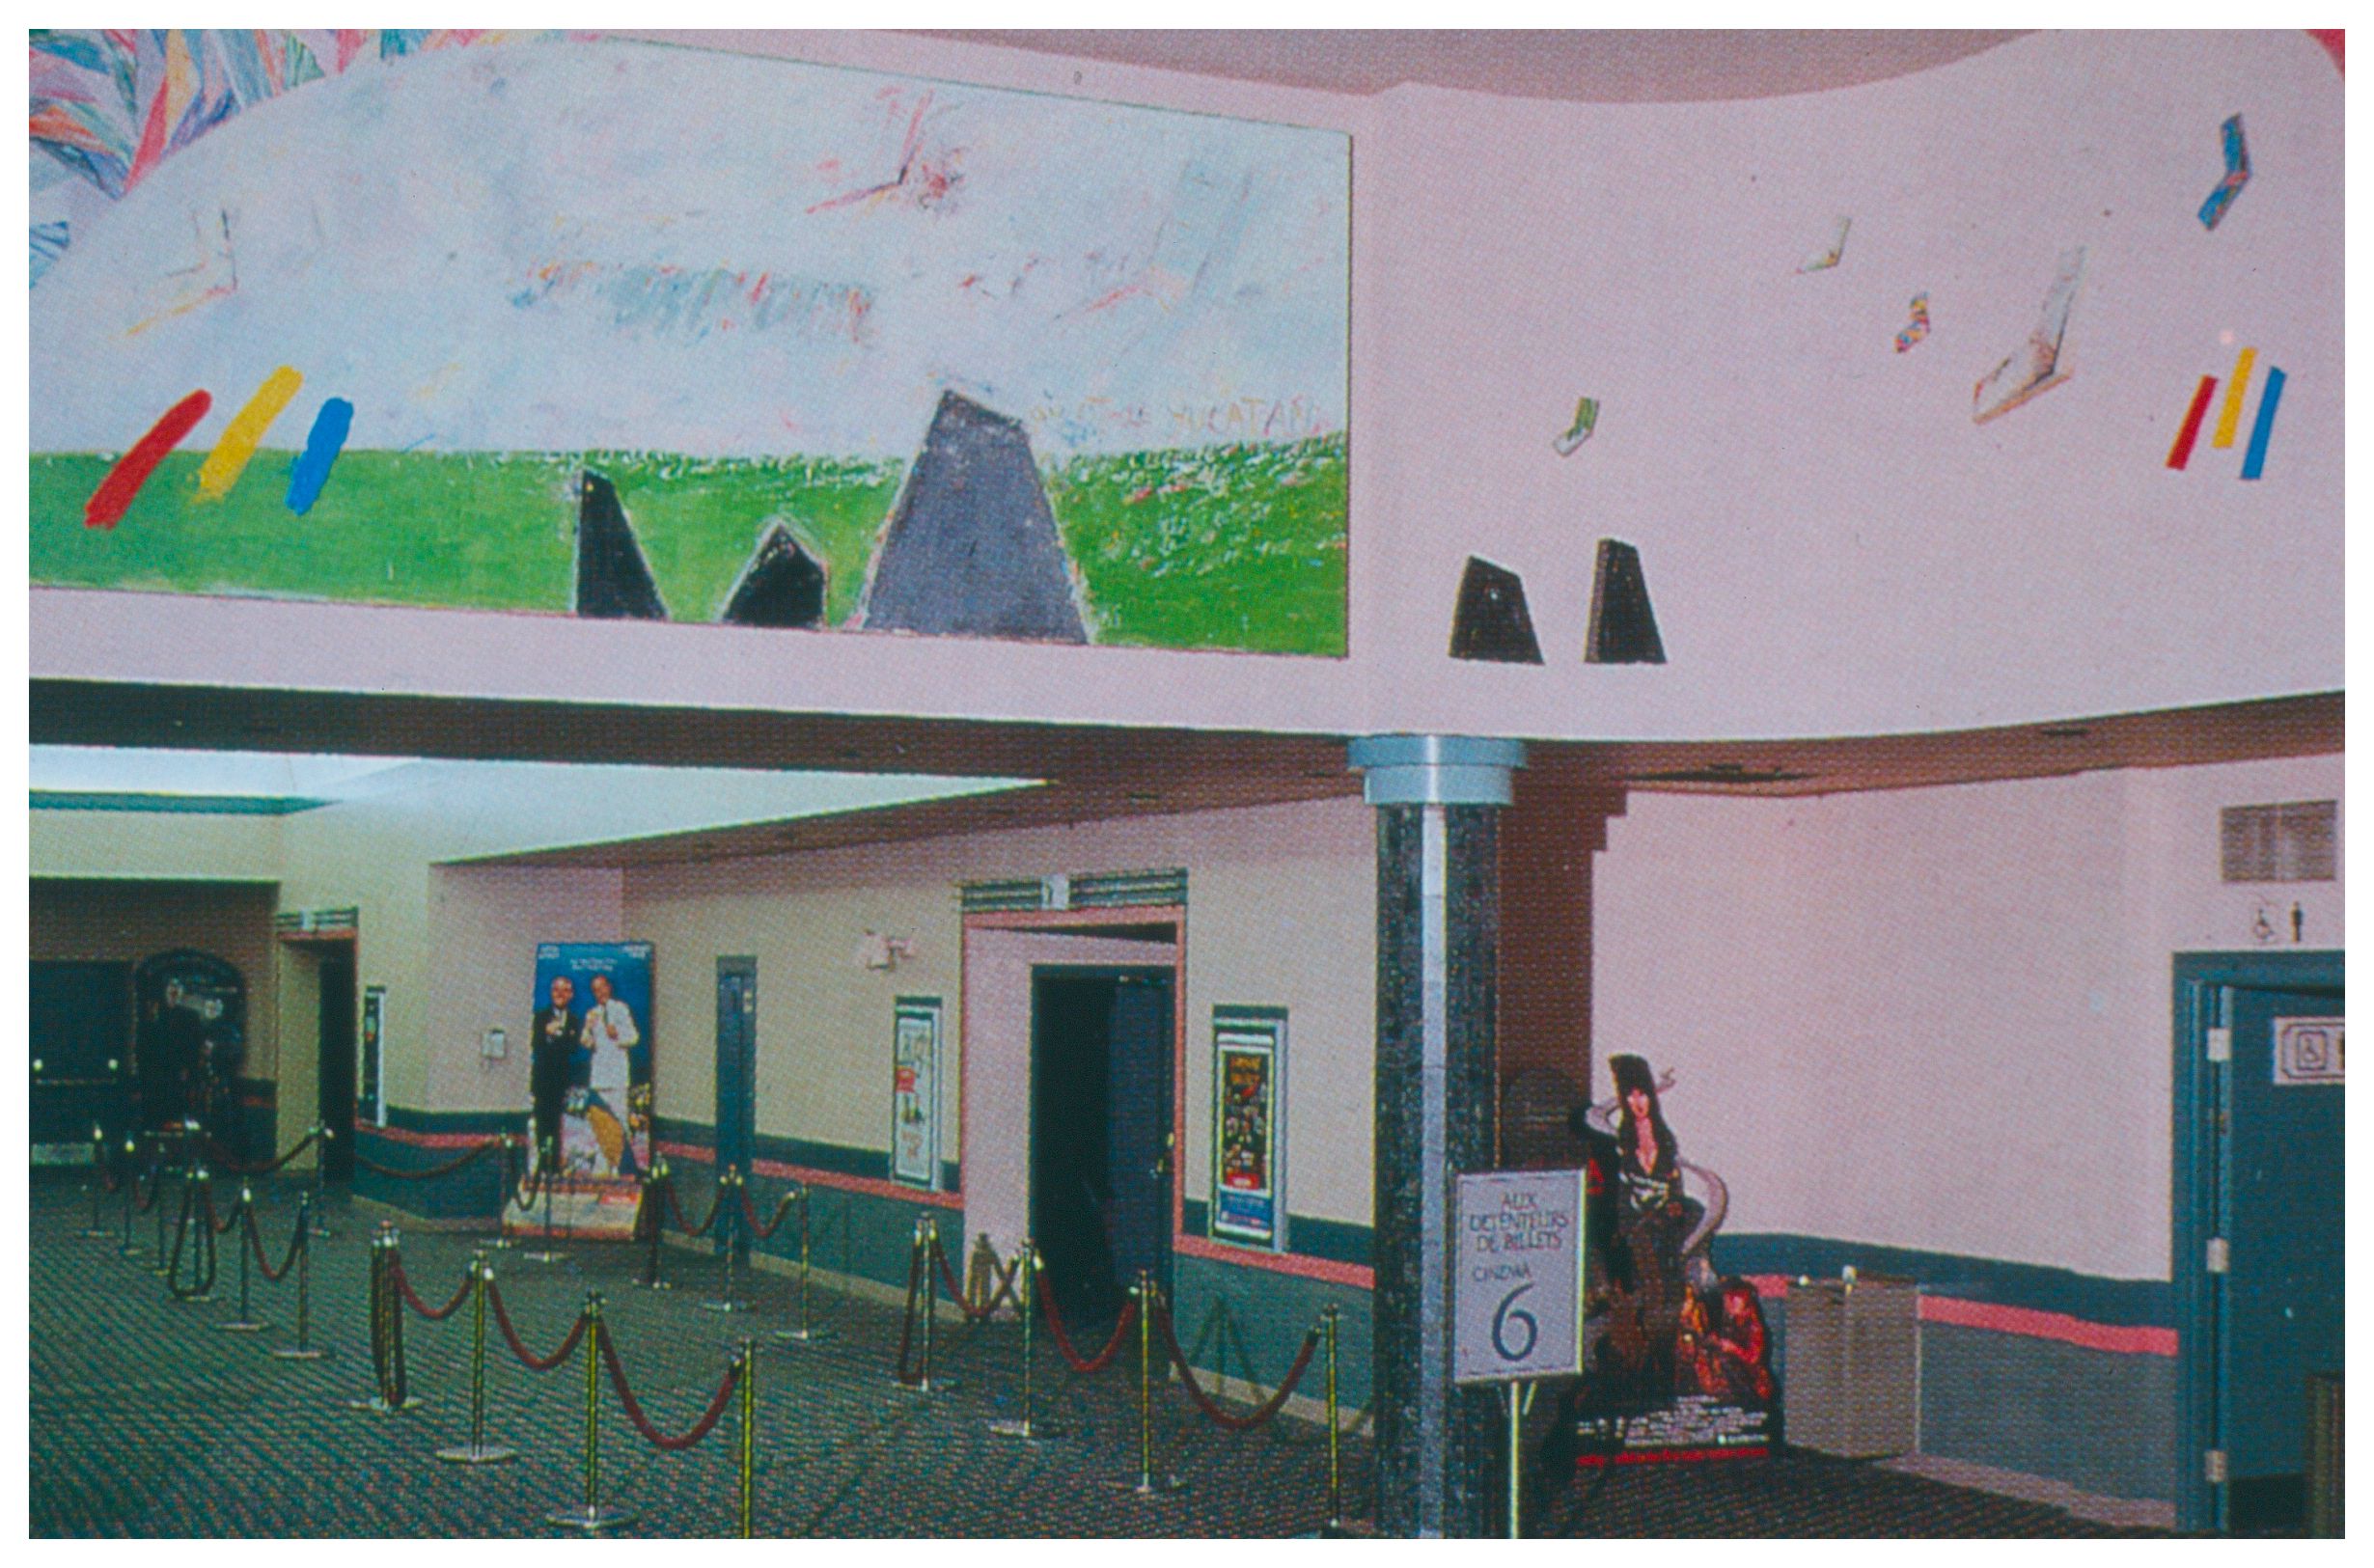 Œuvre commandée par la Cineplex Odeon Corporation et installée au Cinéplex Odéon du Carrefour Laval, Laval, le 29 août 1986.